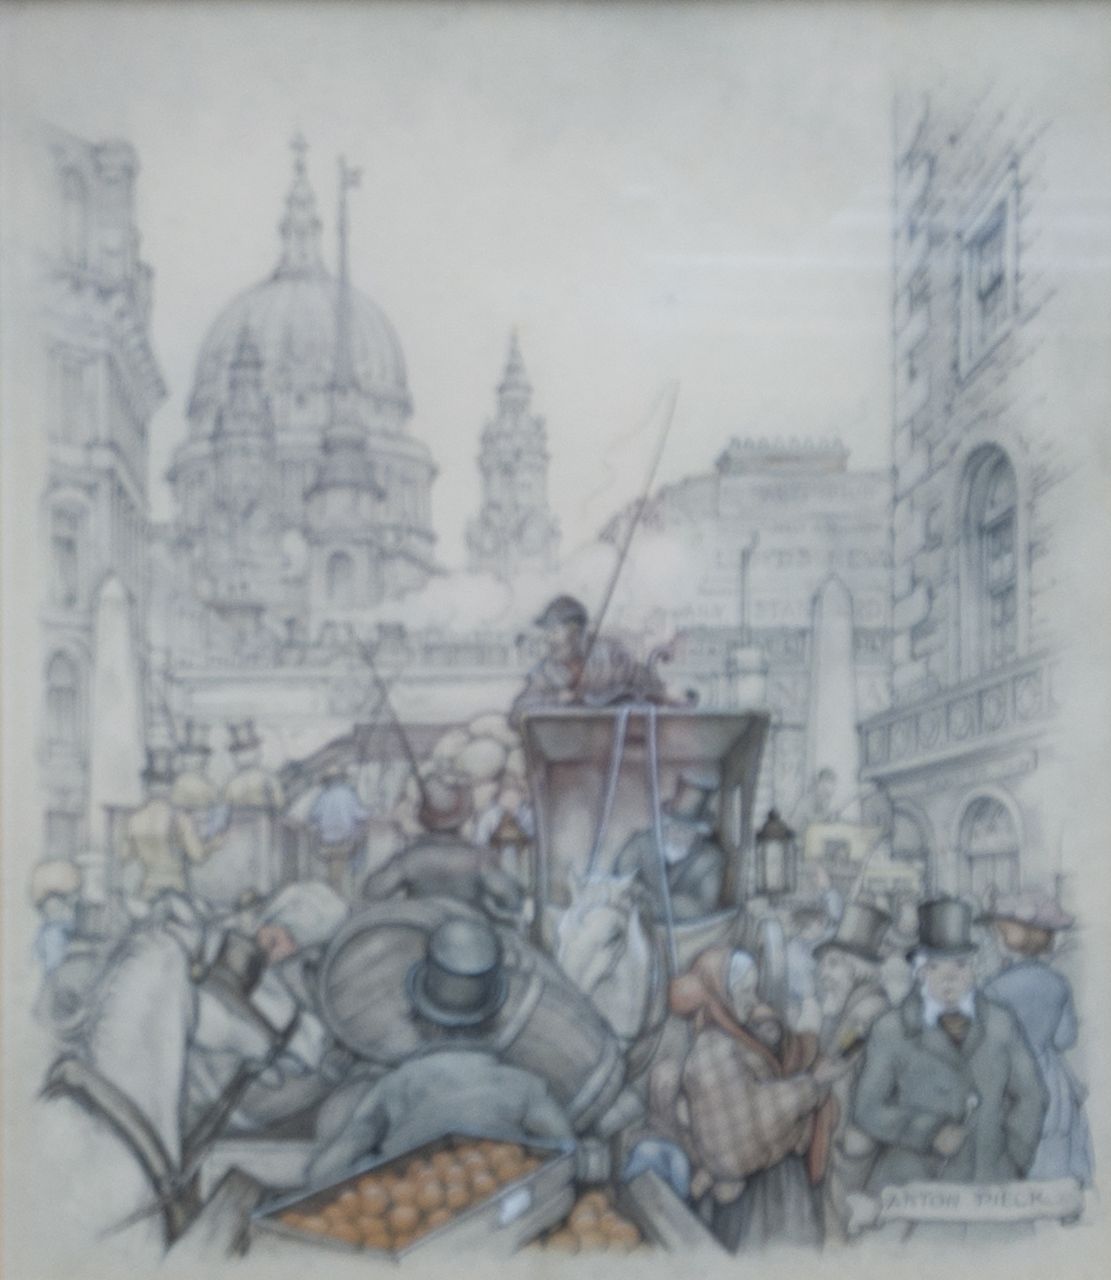 Pieck A.F.  | 'Anton' Franciscus Pieck, Rijtuigen in Fleetstreet, Londen, potlood en aquarel op papier 23,2 x 19,3 cm, gesigneerd rechtsonder